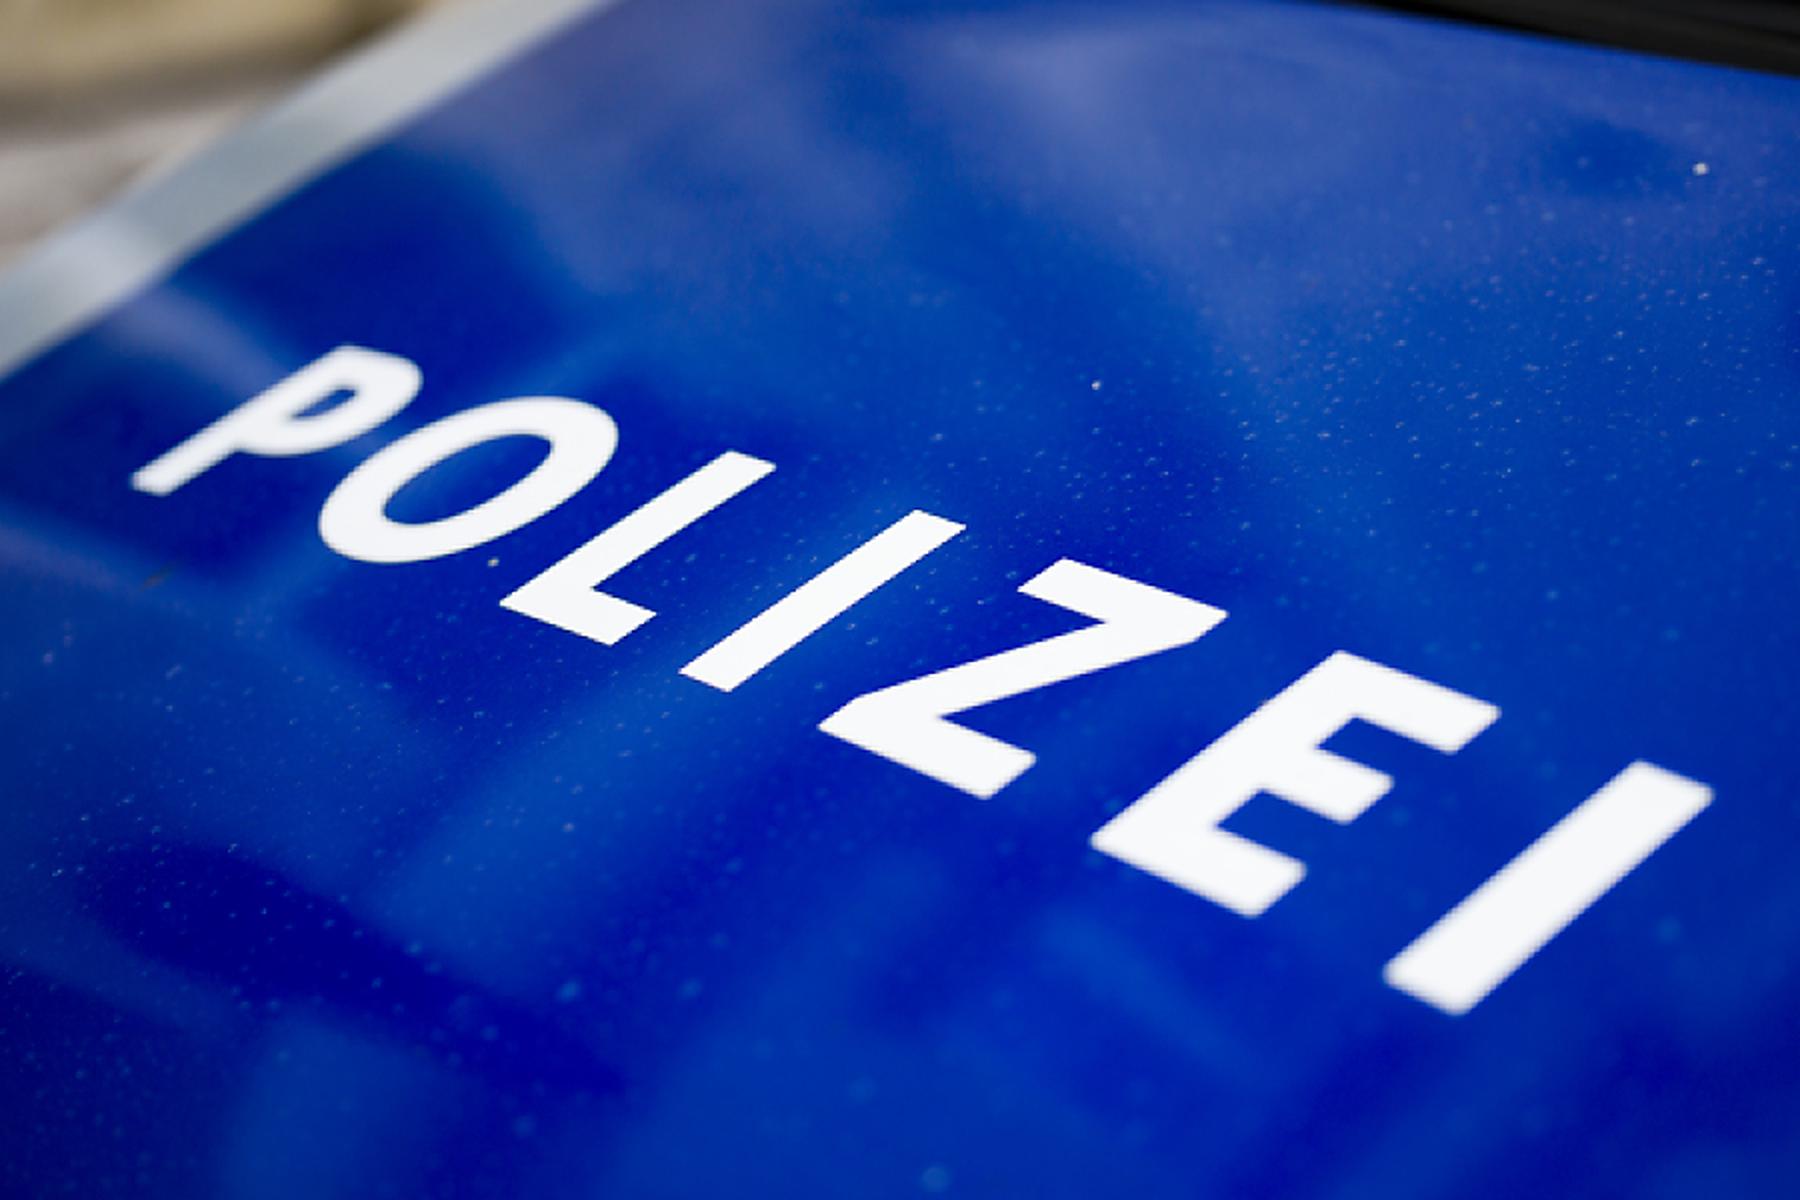 Wien: Tote Frau in Wien - Verdächtiger von Polizei erschossen